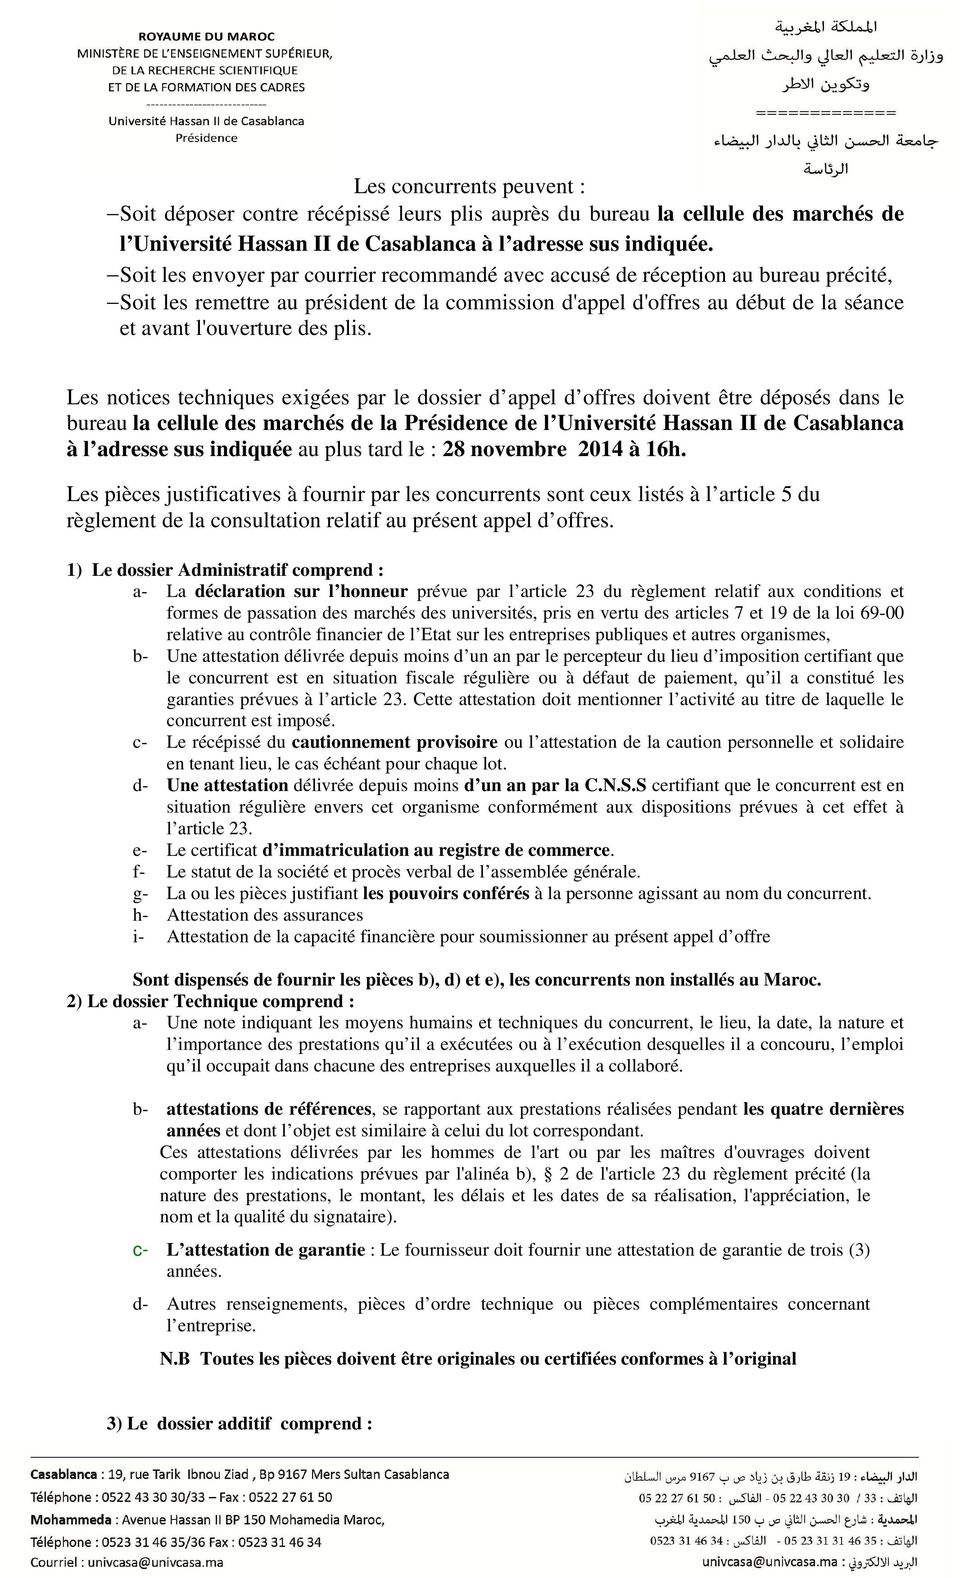 plis. Les notices techniques exigées par le dossier d appel d offres doivent être déposés dans le bureau la cellule des marchés de la Présidence de l Université Hassan II de Casablanca à l adresse